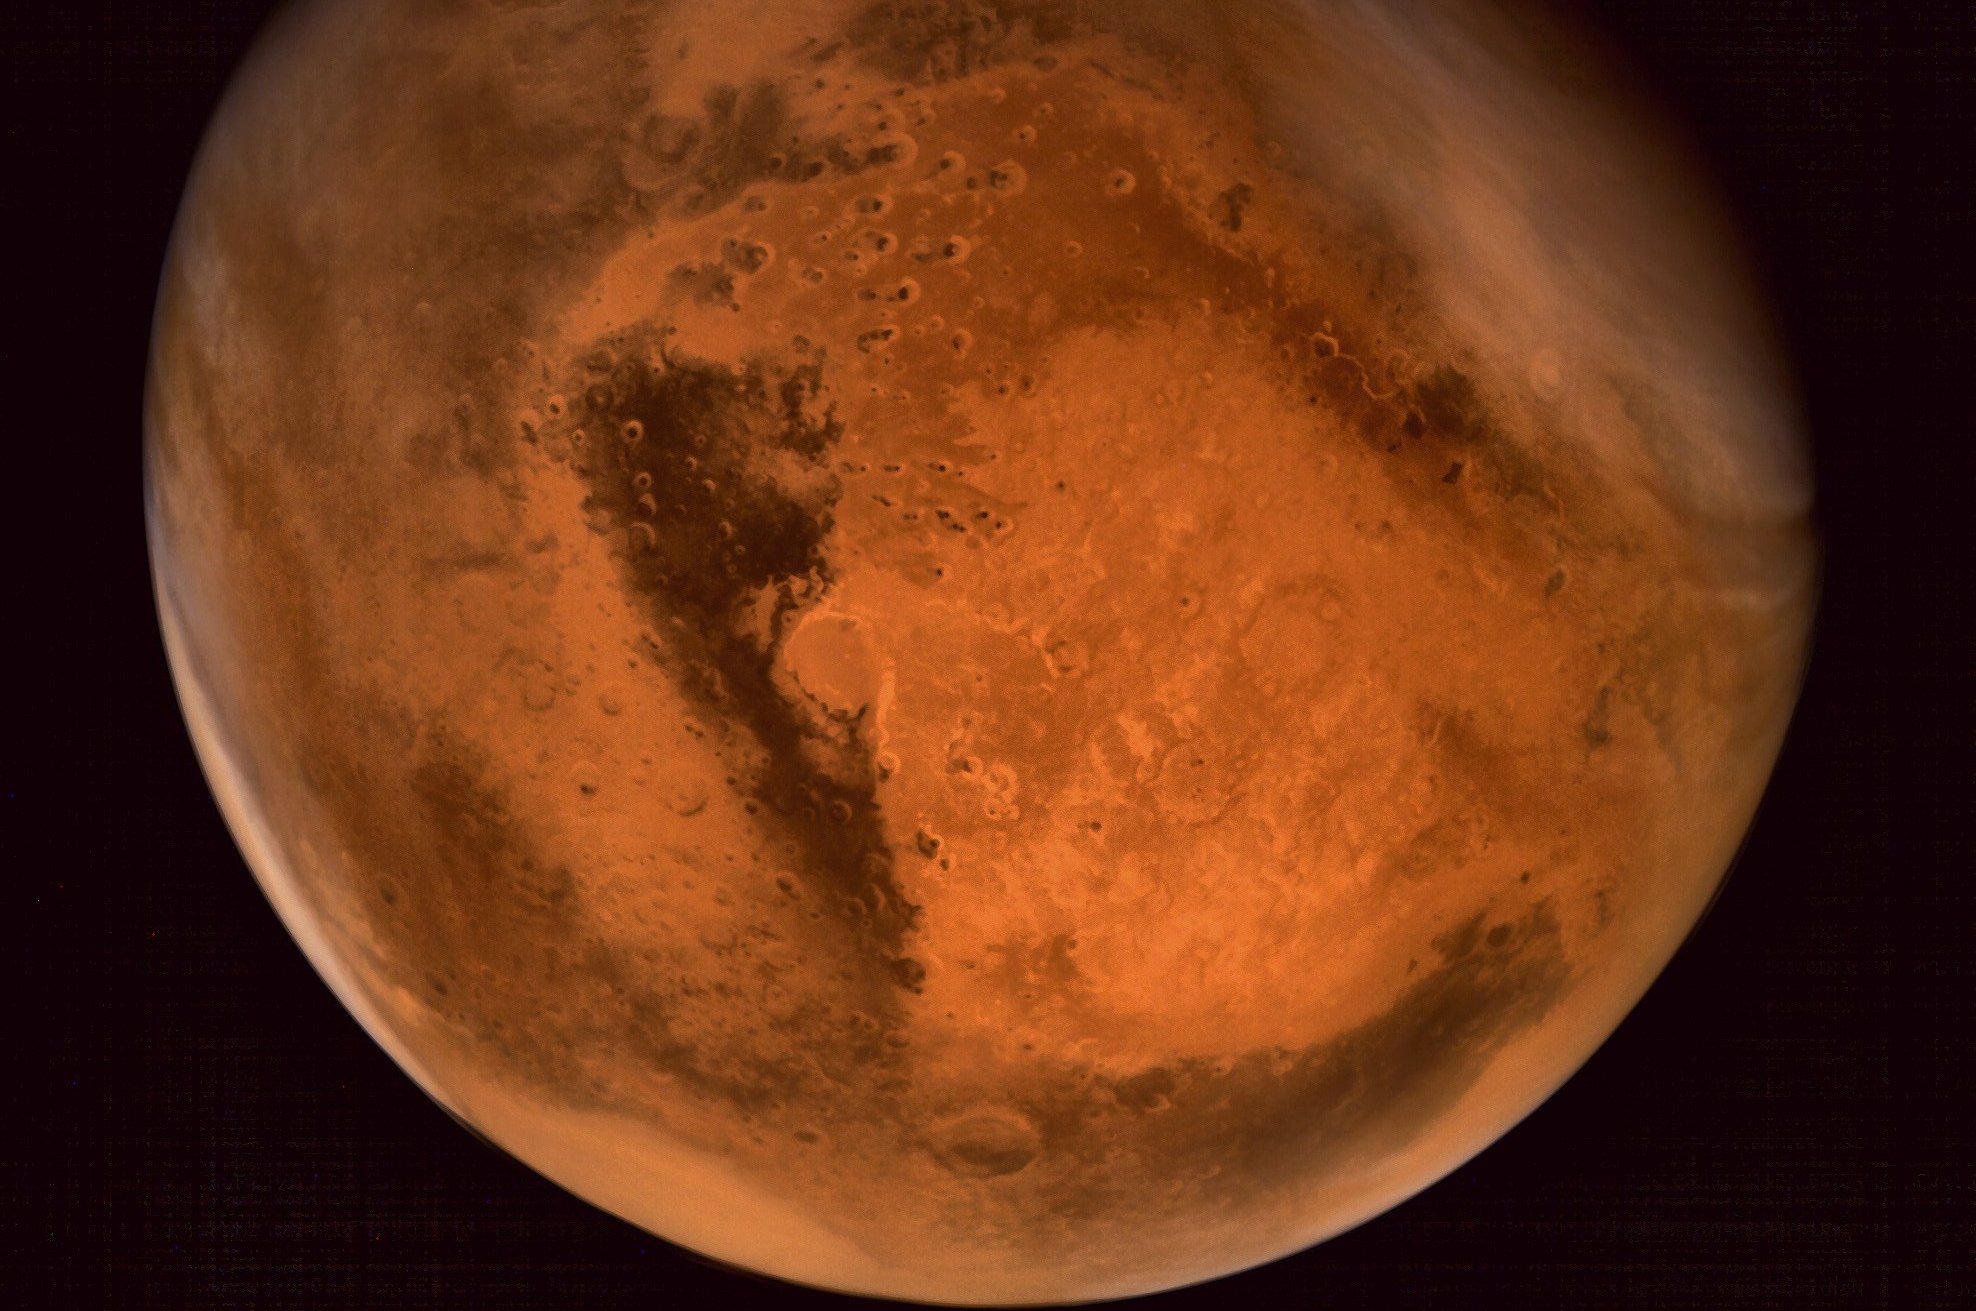 Une vue de la planète Mars obtenue grâce à la sonde indienne Mangalyaan. © Indian Space Research Organisation